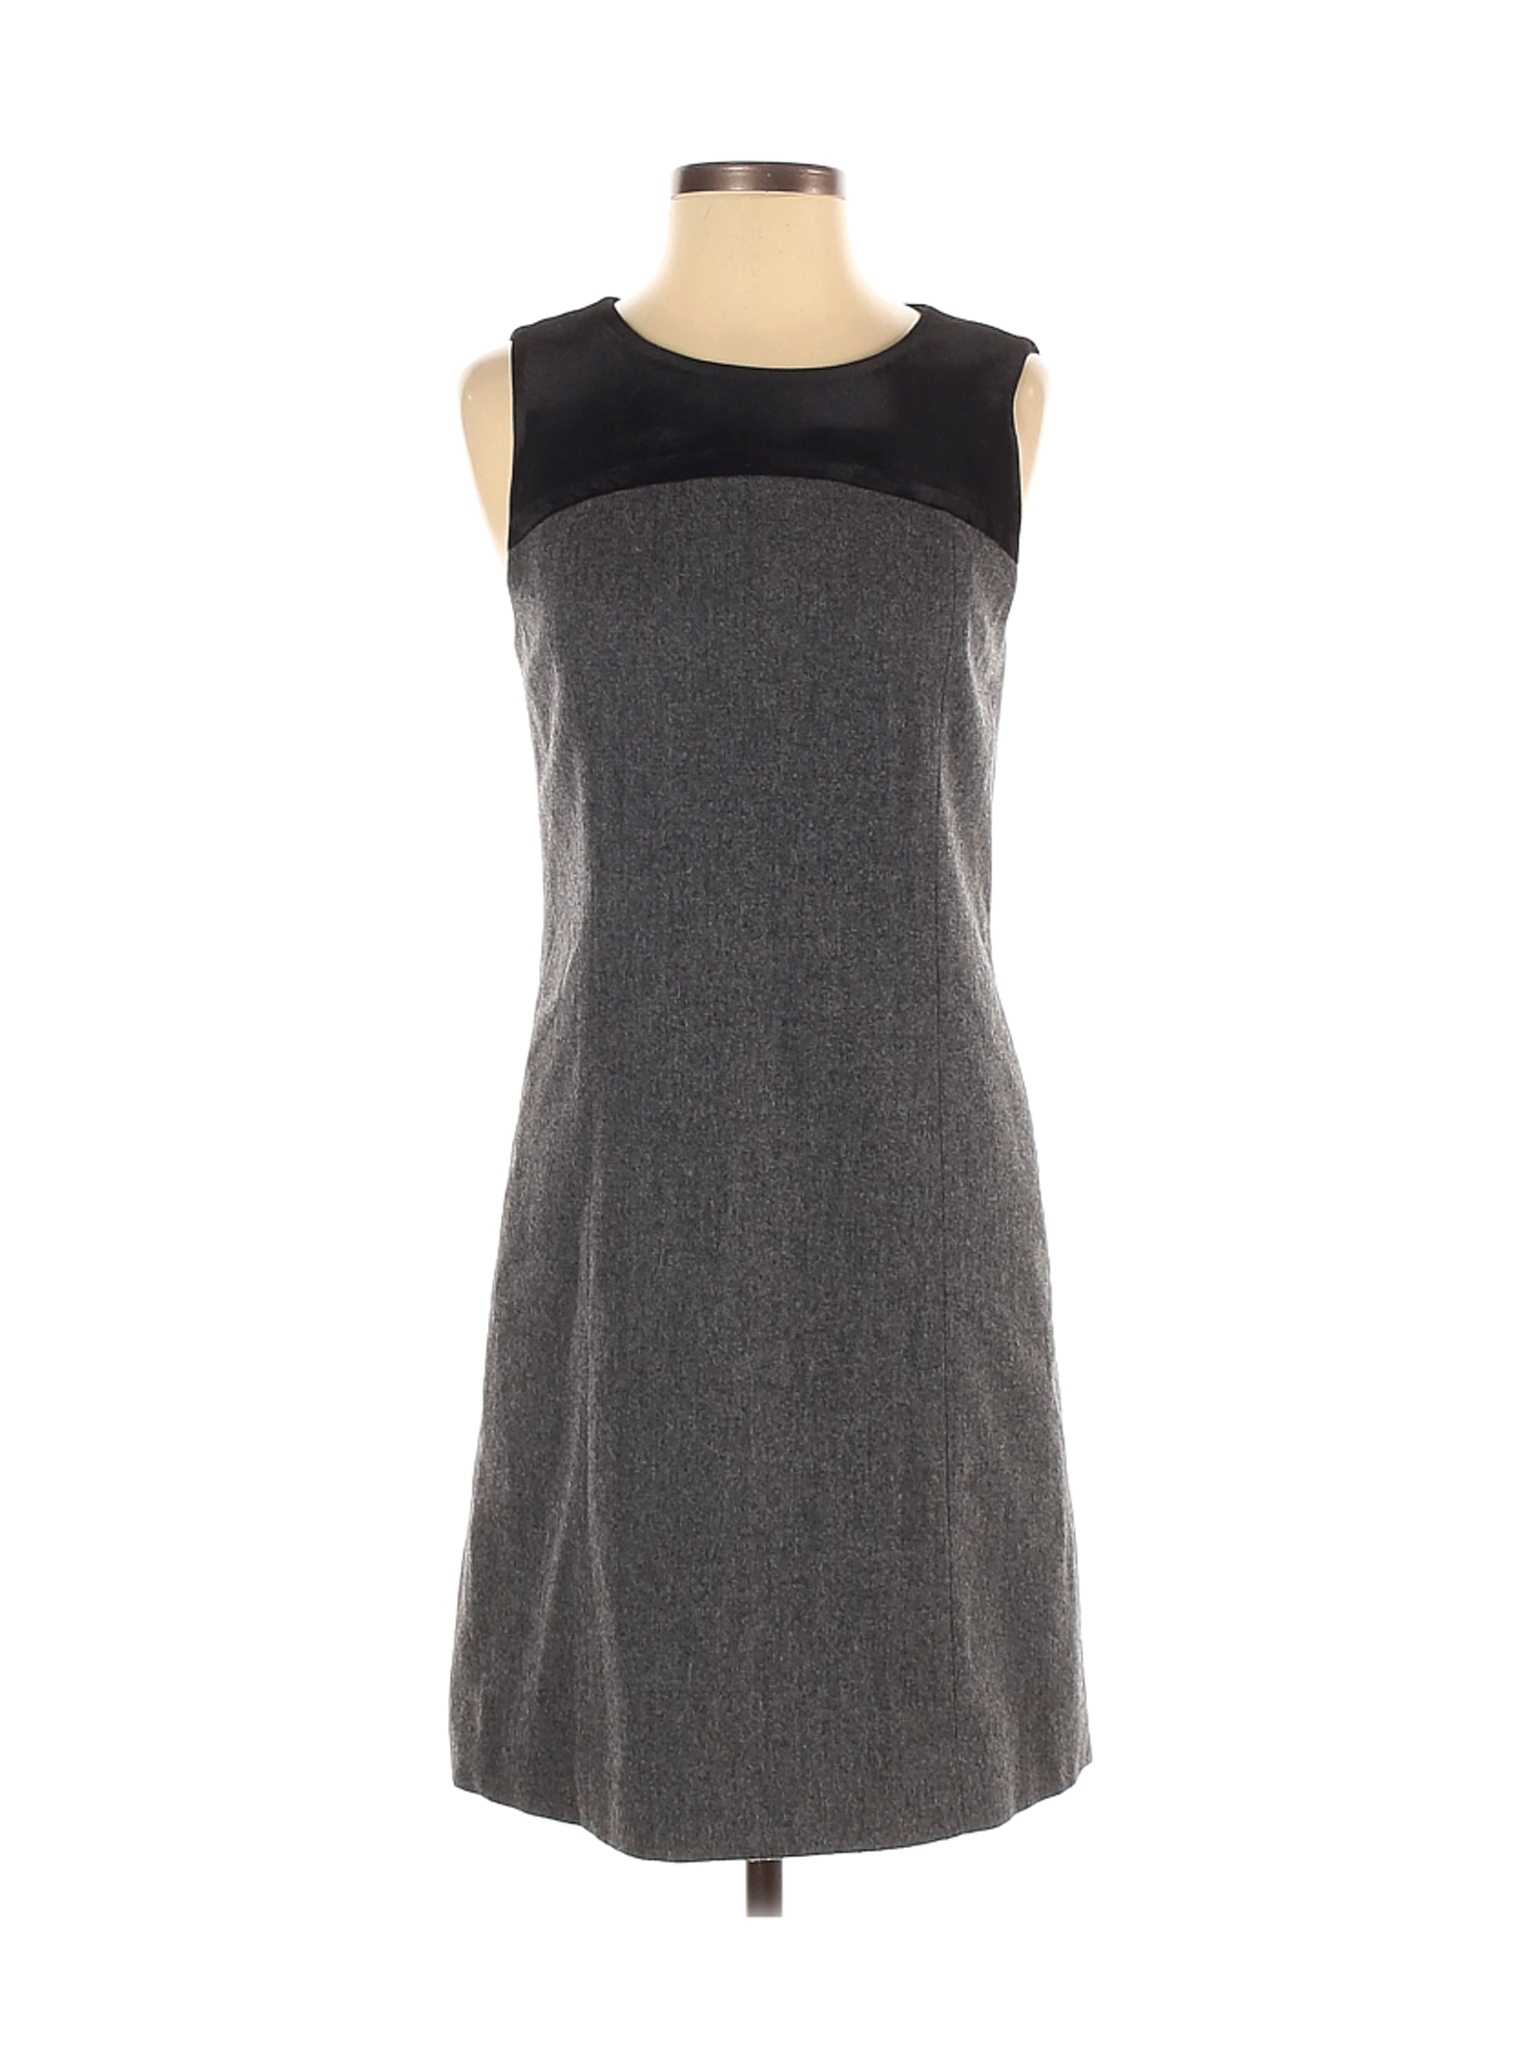 Arnaldo Bassini Women Gray Casual Dress S | eBay